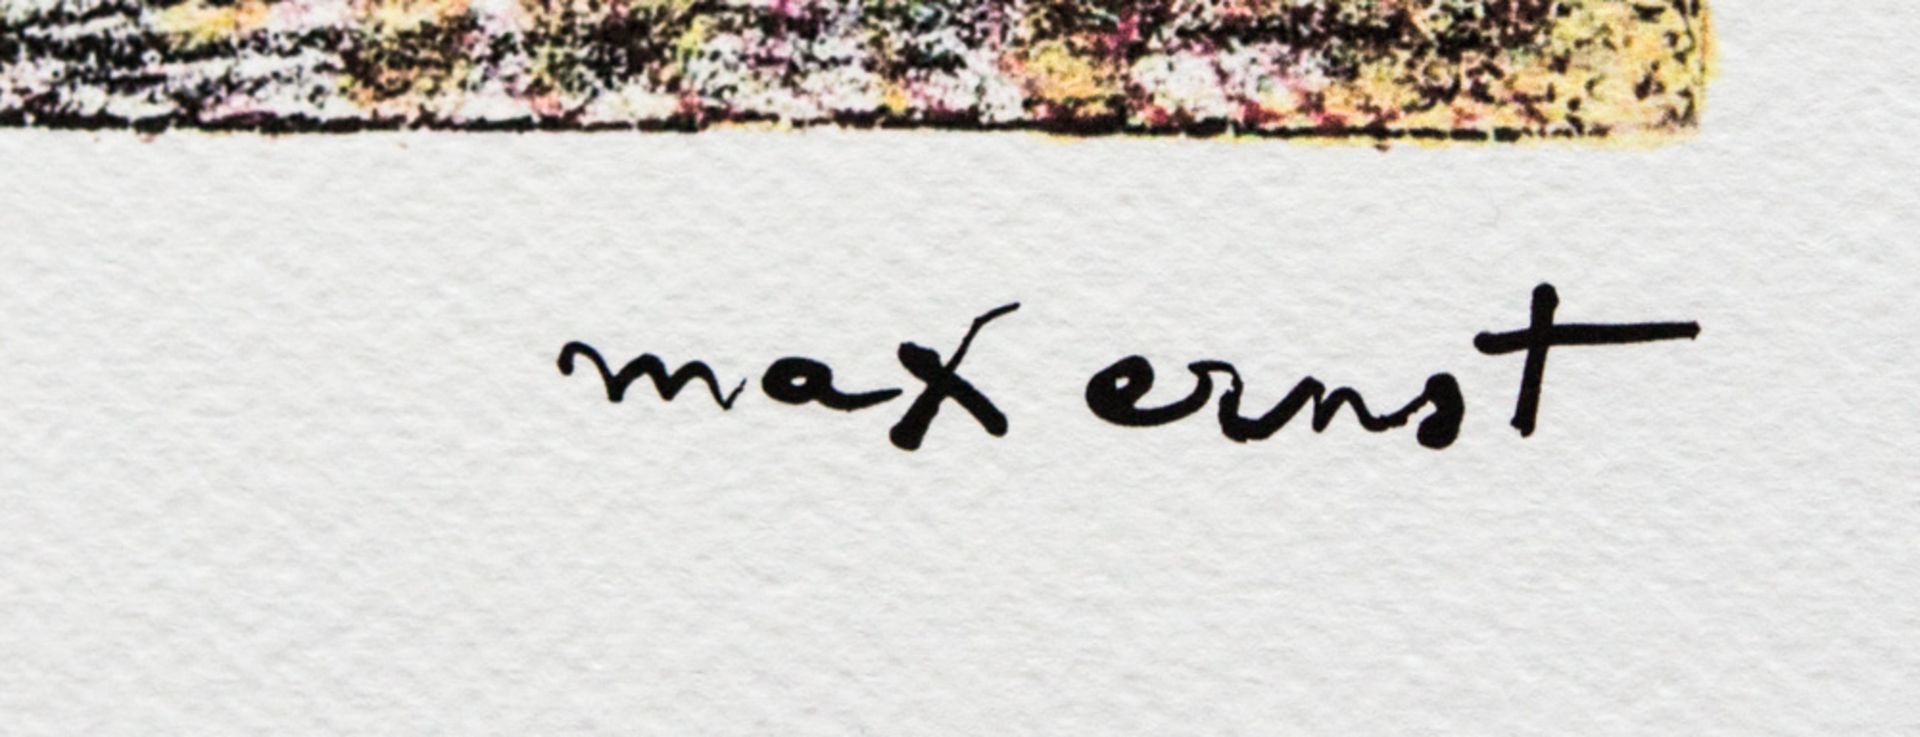 Max Ernst 'Masques' - Bild 4 aus 5